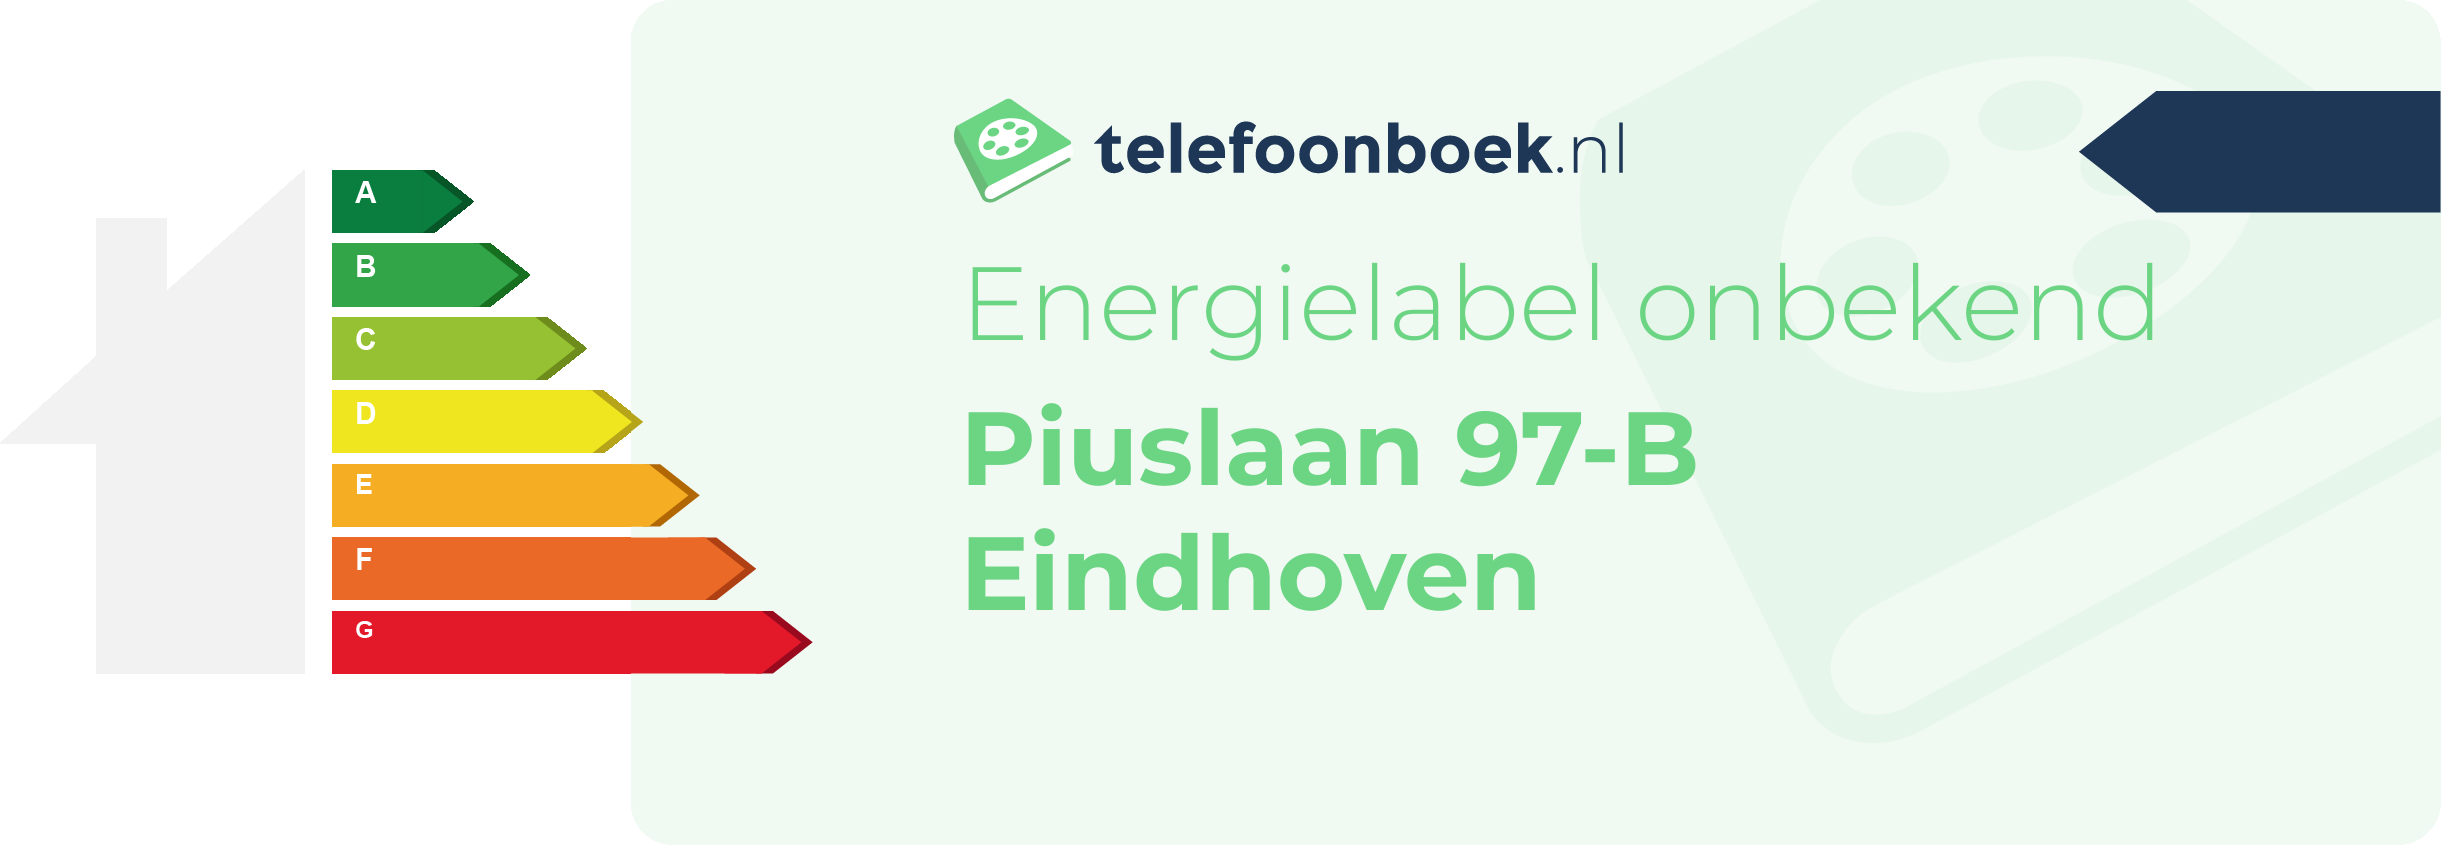 Energielabel Piuslaan 97-B Eindhoven